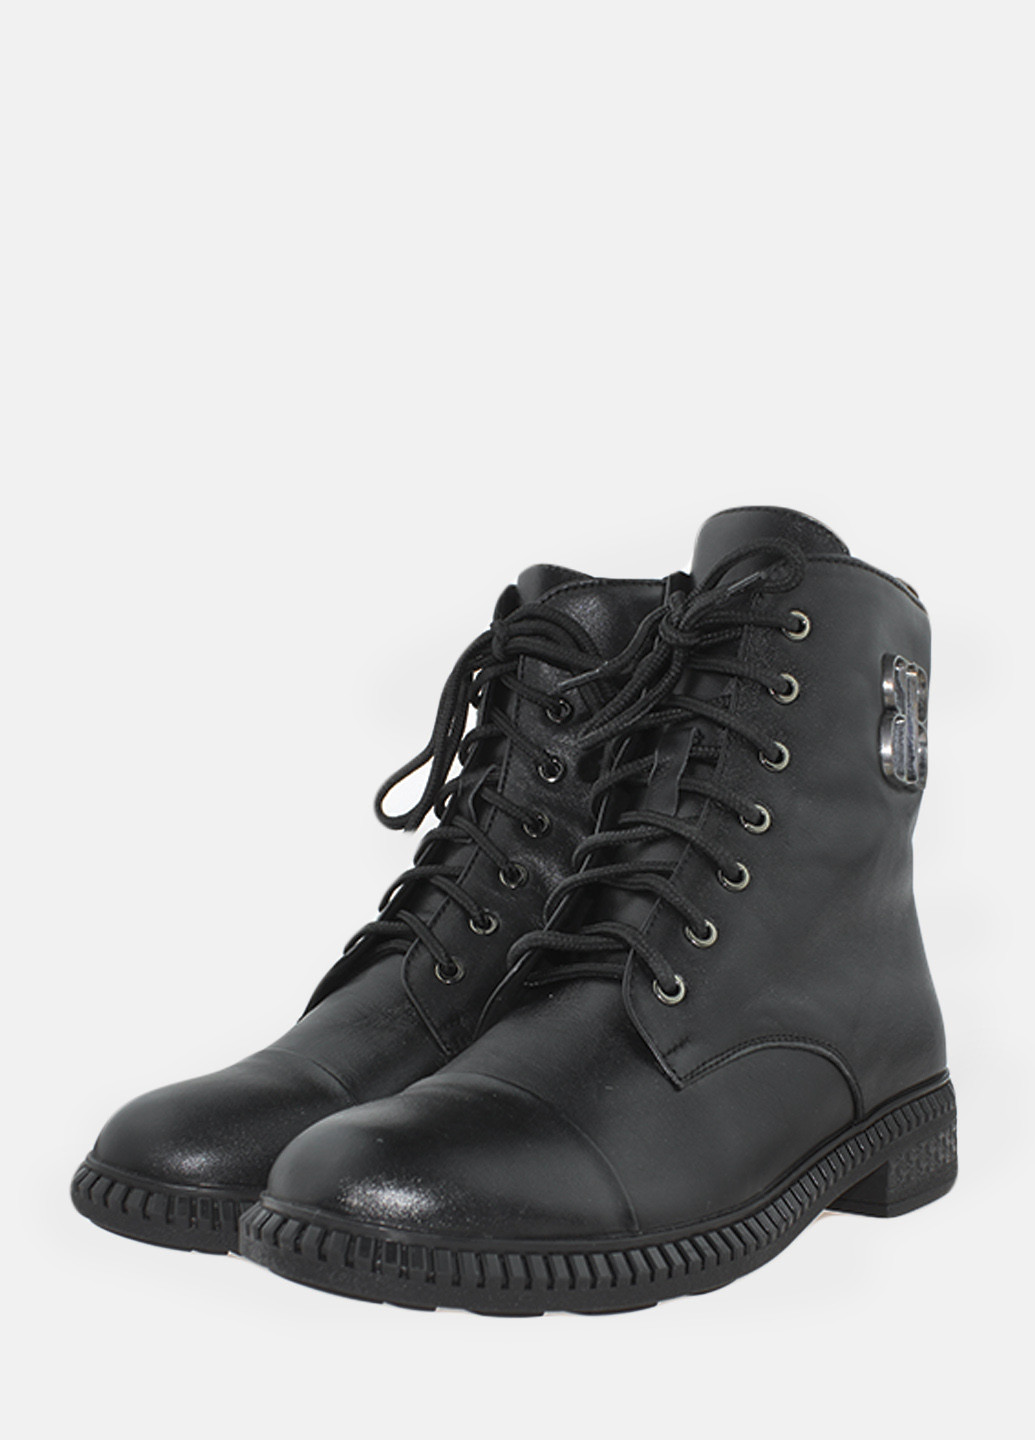 Зимние ботинки rsm18731 черный Sothby's